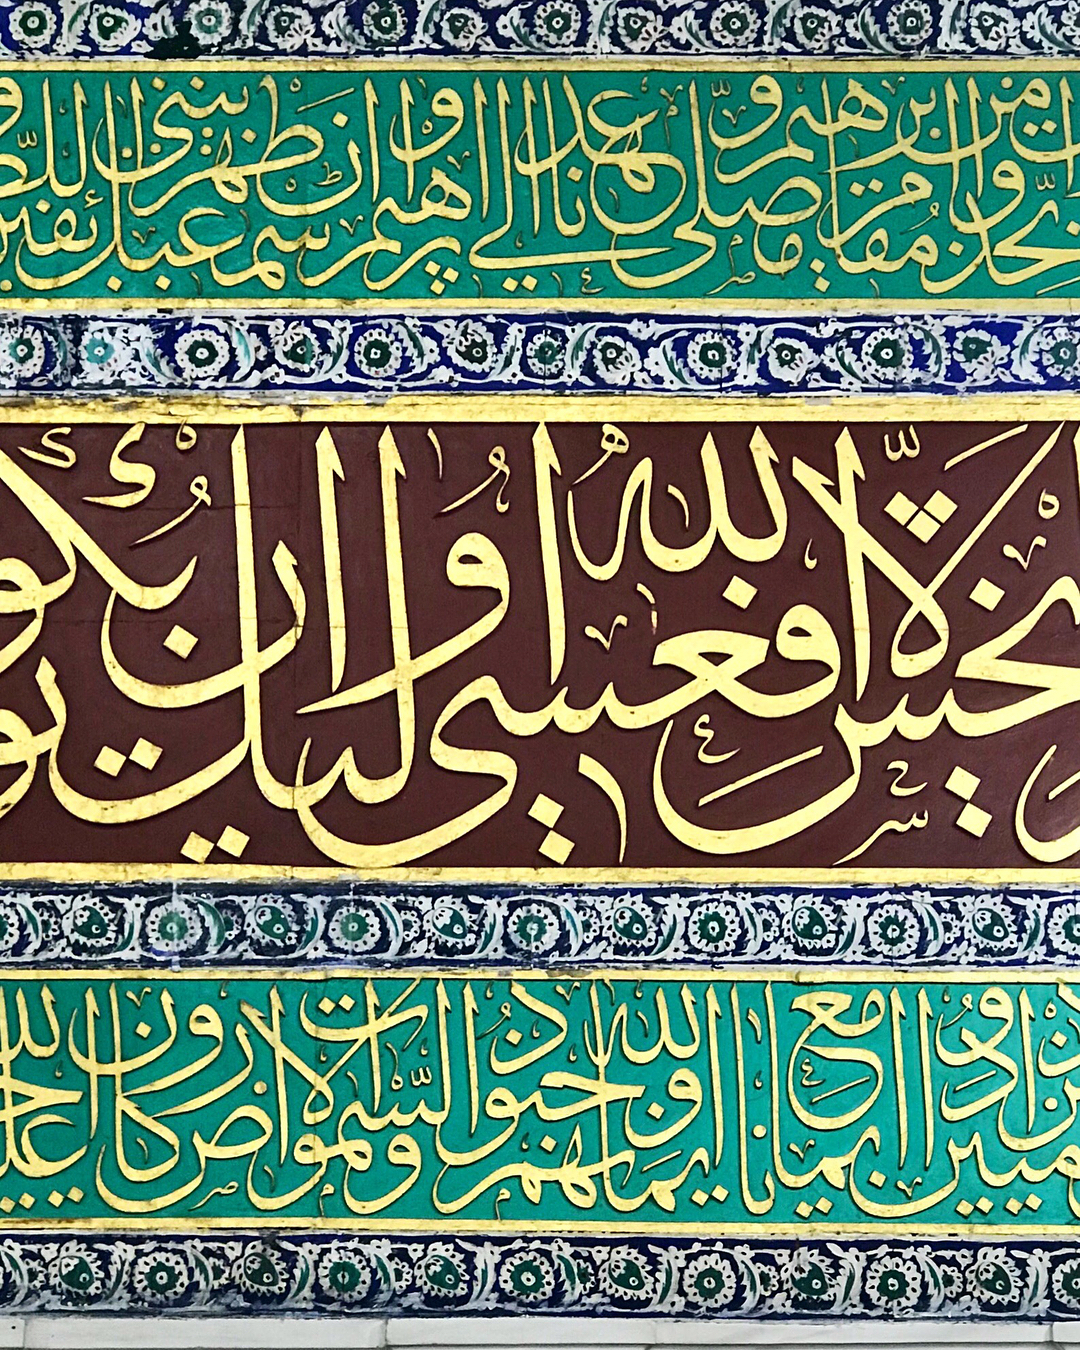 Donwload Photo Kaligrafi Abdullah Zühdi Efendi Sultan Abdülmecid’in emriyle Mescid-i Nebevi’nin yazıların…- Mhmd Ozcay